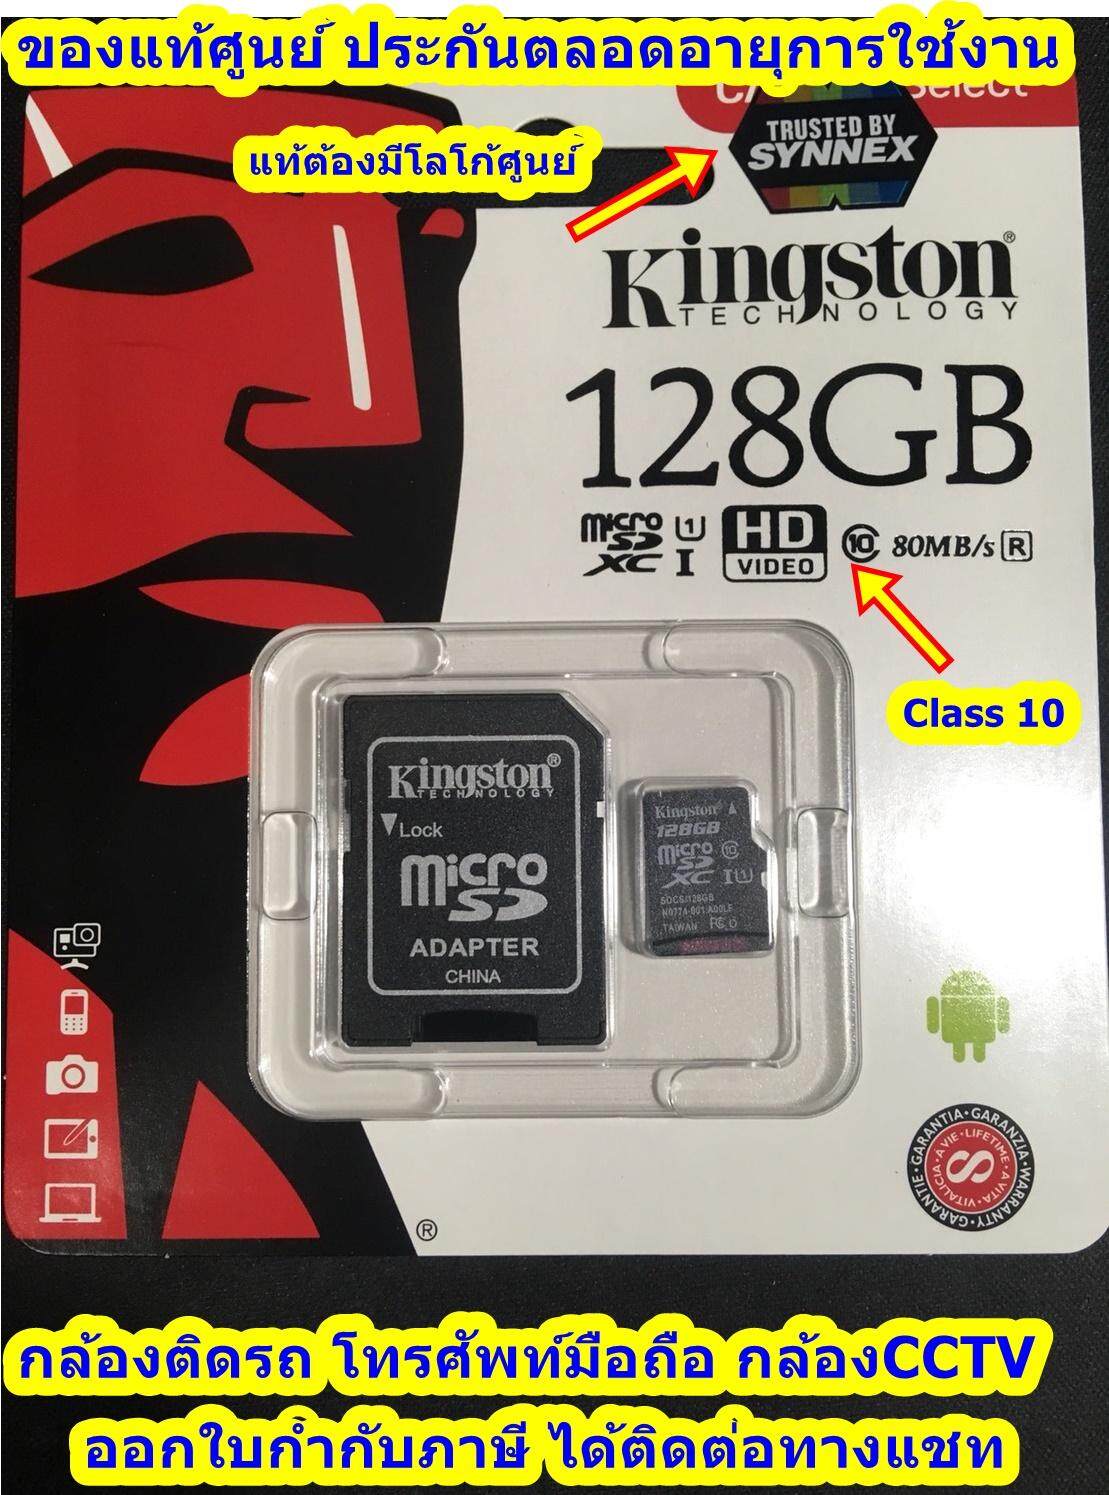 !!! ของแท้ ศูนย์ Kingston Memory Card Micro SD 128 GB Class 10 ของแท้ ศูนย์ ingram เหมาะสำหรับกล้องติดรถ/มือถือ ระวังของปลอมถูกแต่จะใช้ไม่ได้